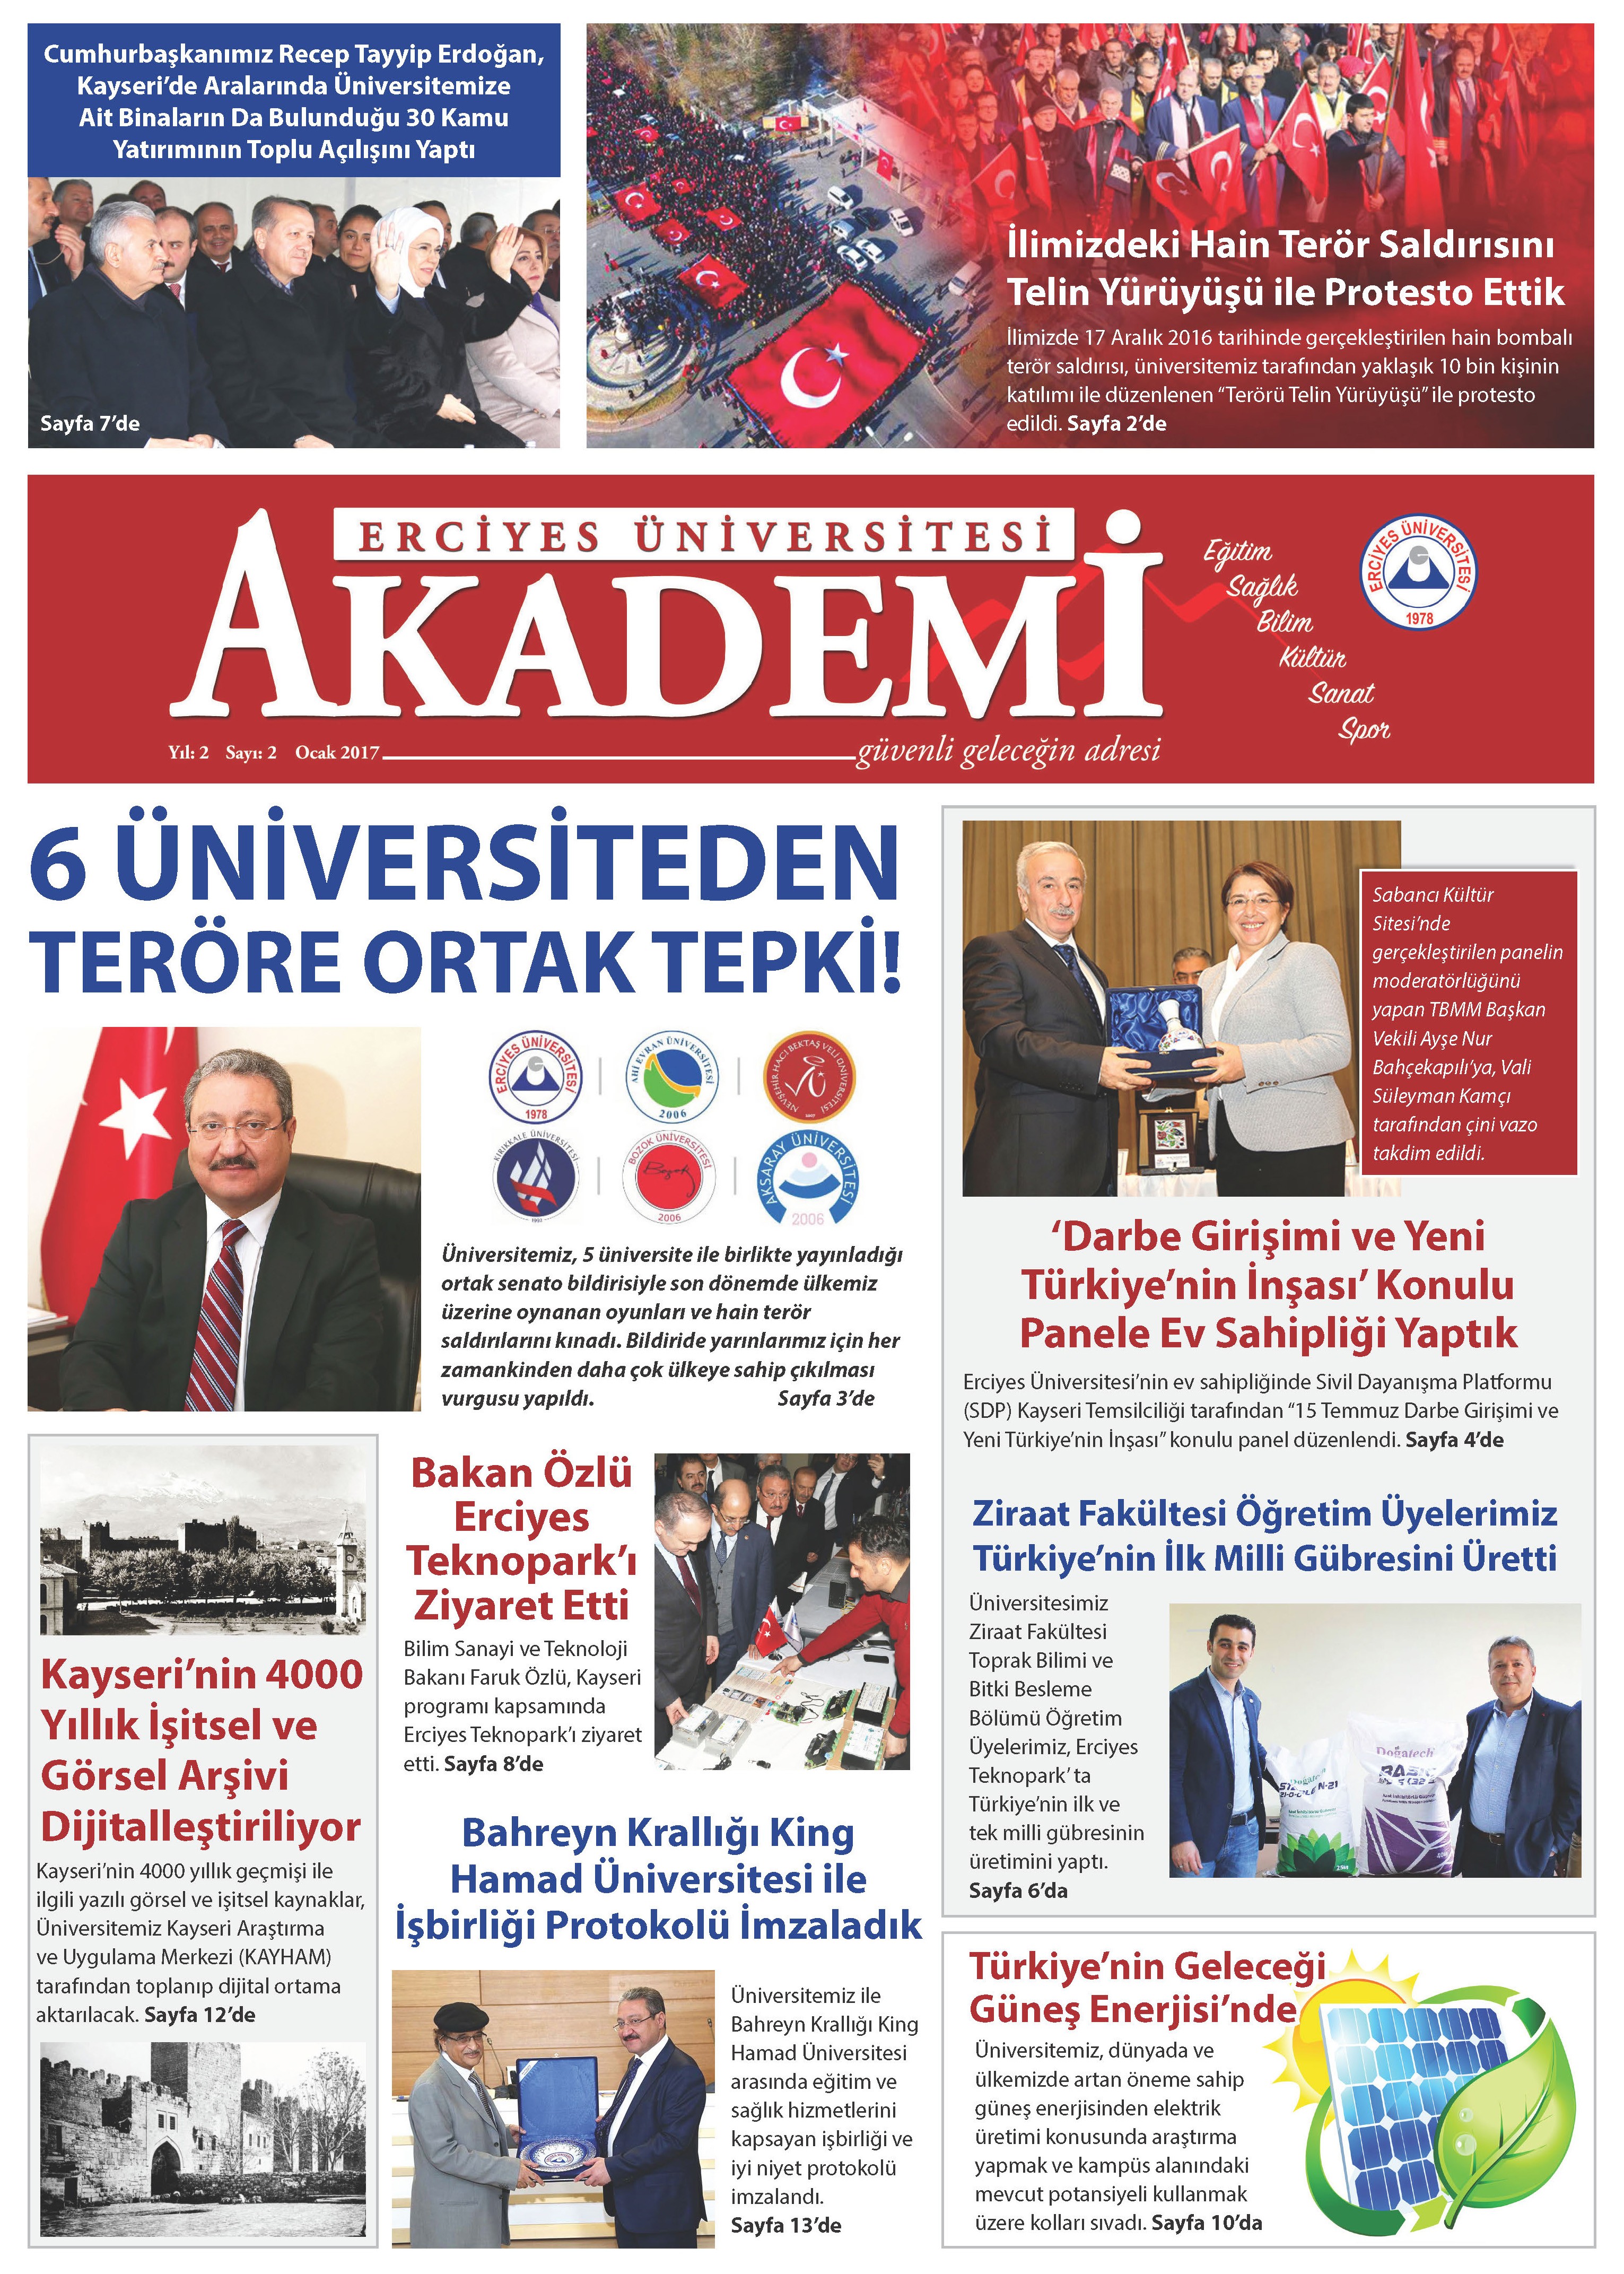 Erciyes Üniversitesi AKADEMİ Gazetesinin İkinci Sayısı Çıktı